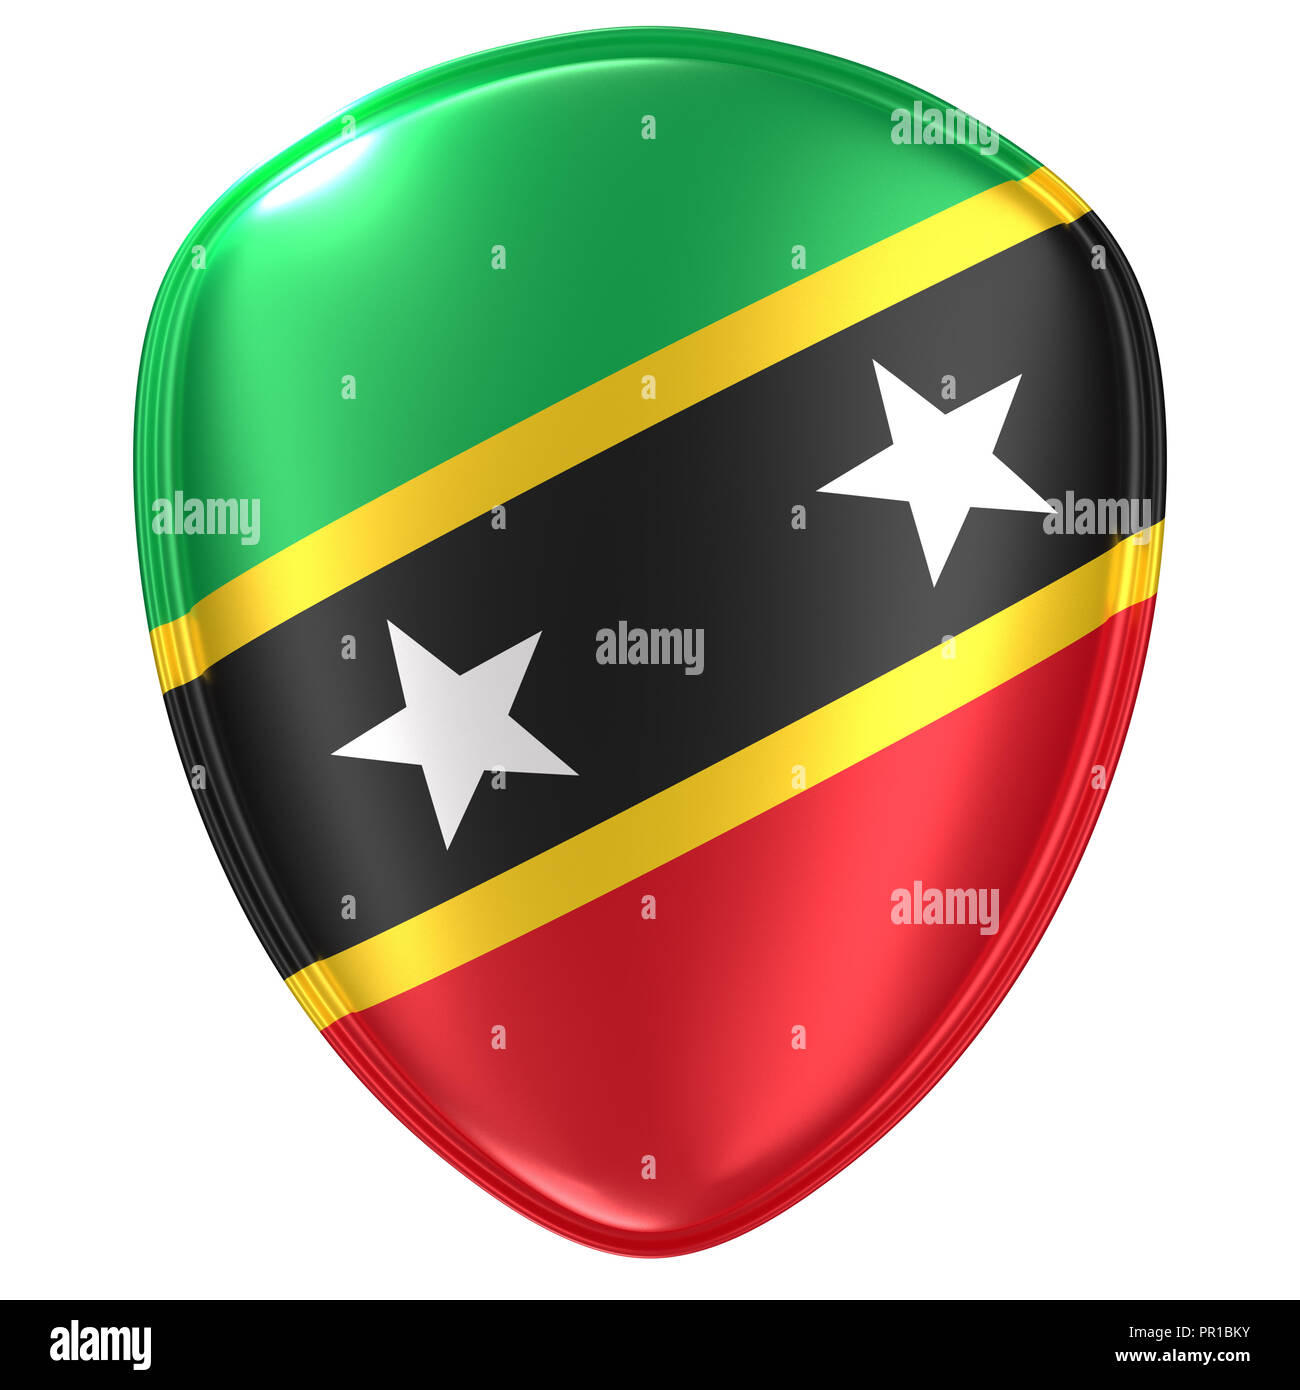 3D-Rendering für eine Saint Christopher und Nevis Flagge Symbol auf weißem Hintergrund. Stockfoto